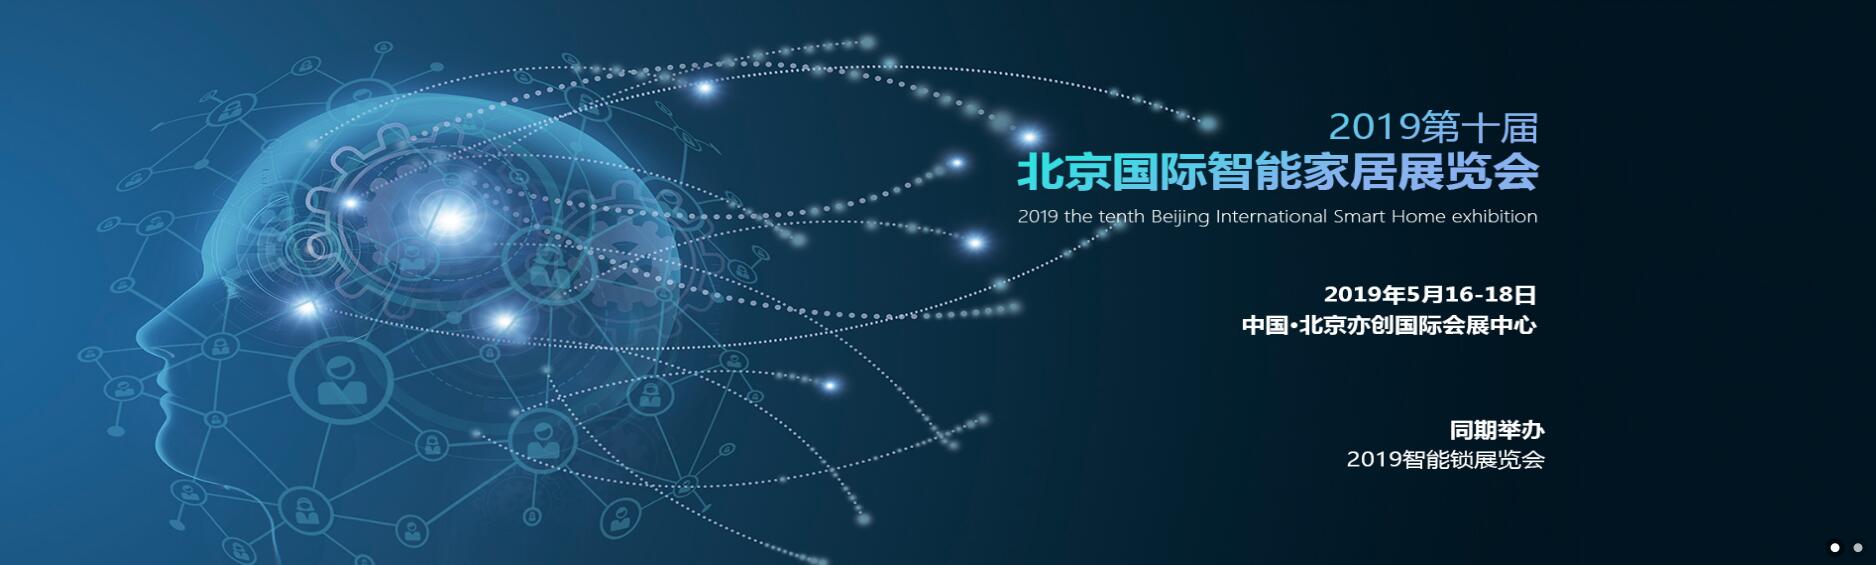 2019*十届北京国际智能家居展览会